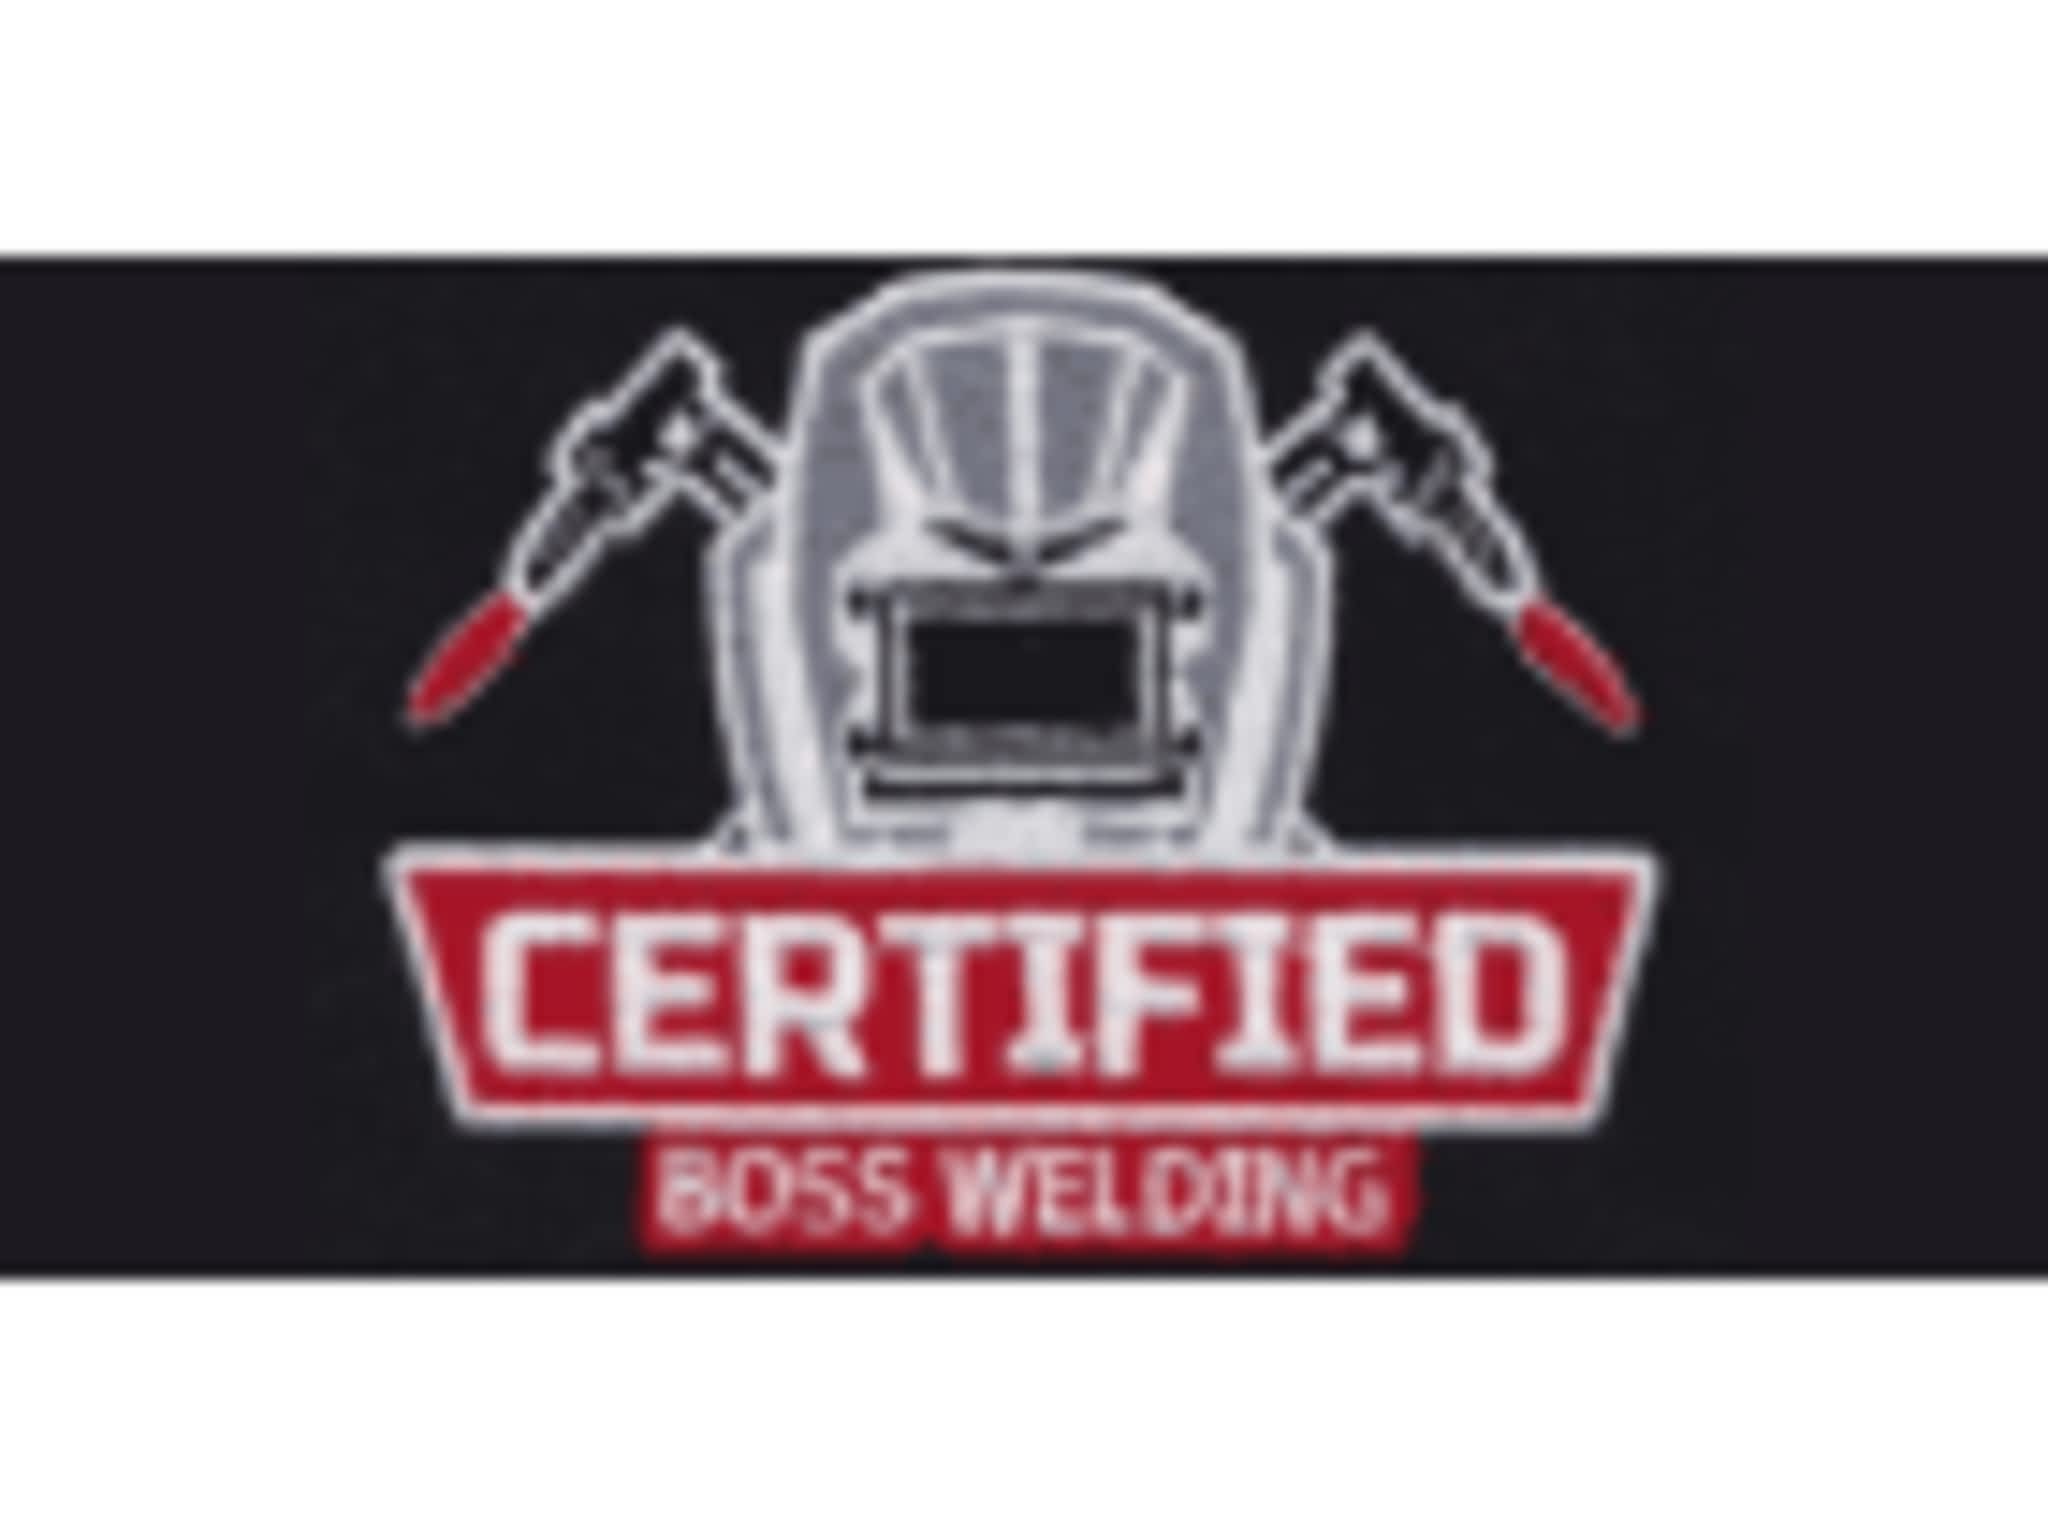 photo Certified Boss Welding